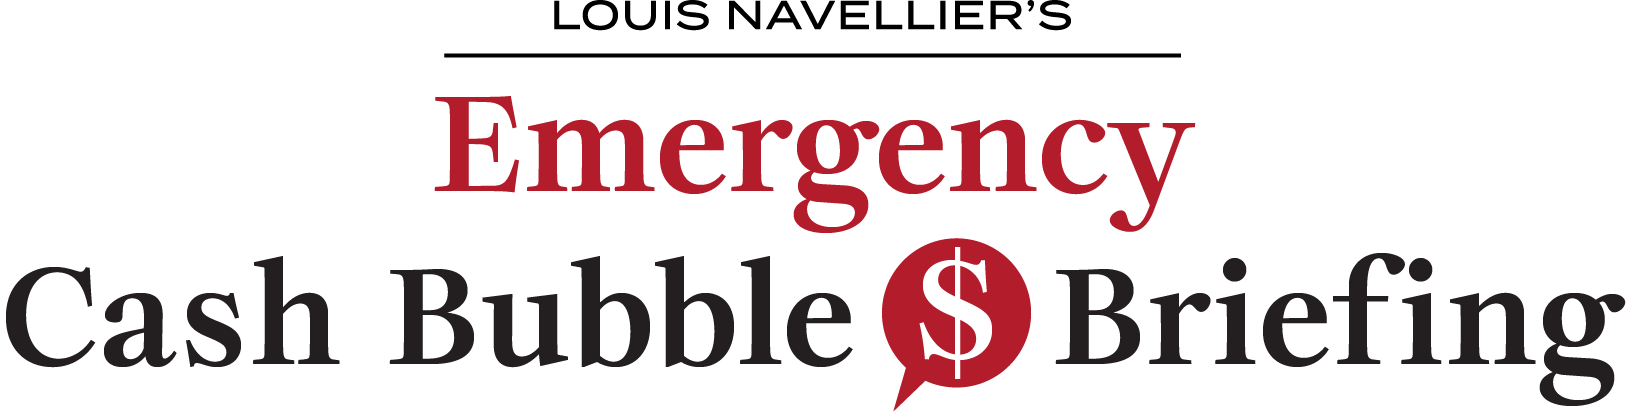 Emergency Cash Bubble Briefinglogo